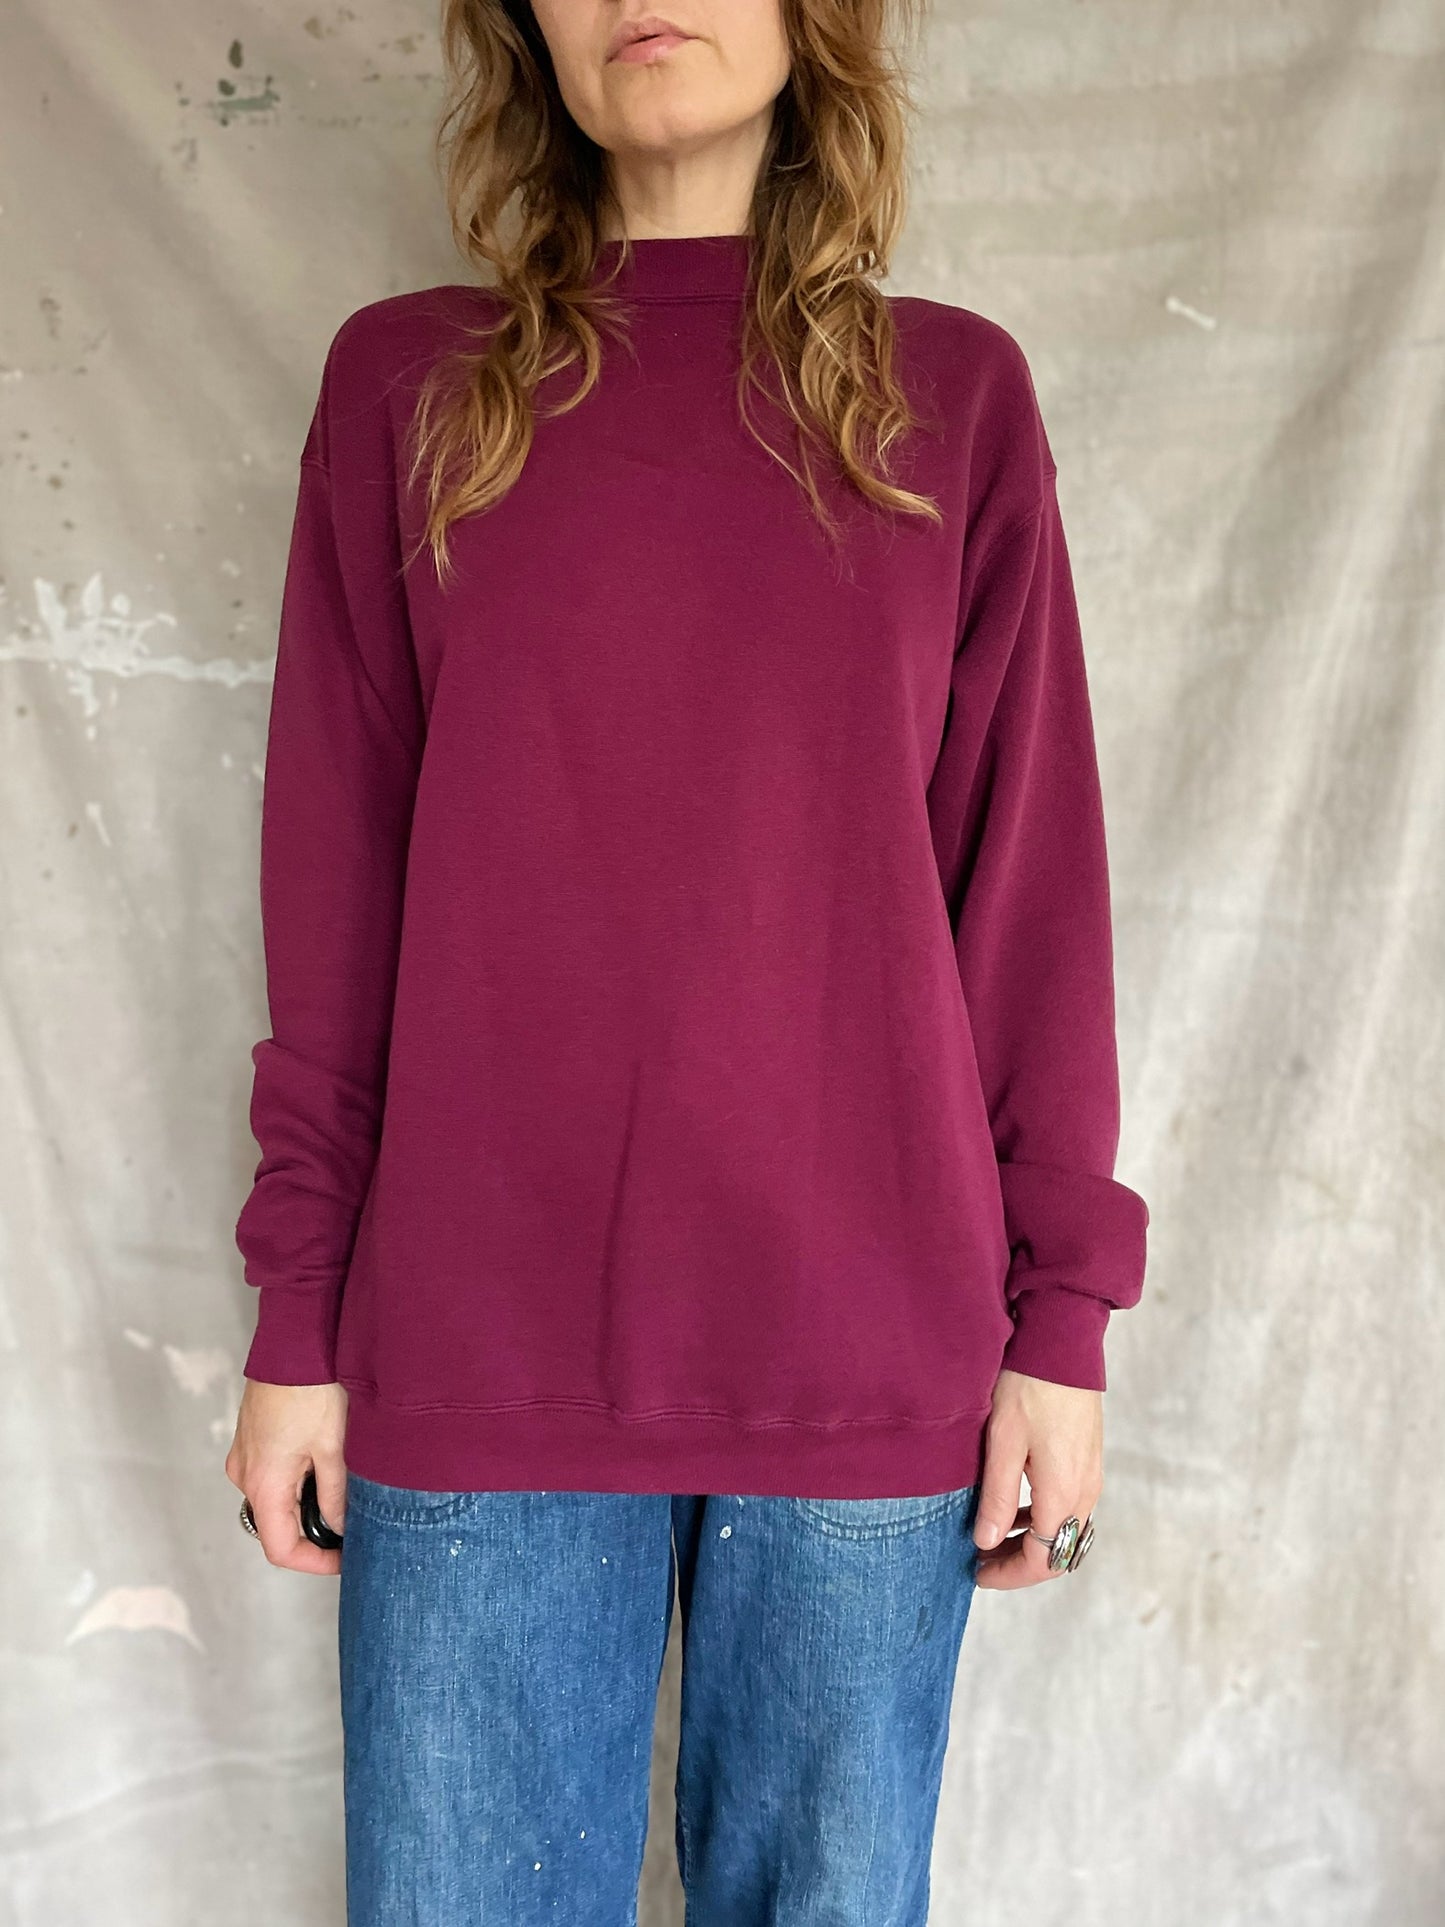 90s Blank Maroon Sweatshirt